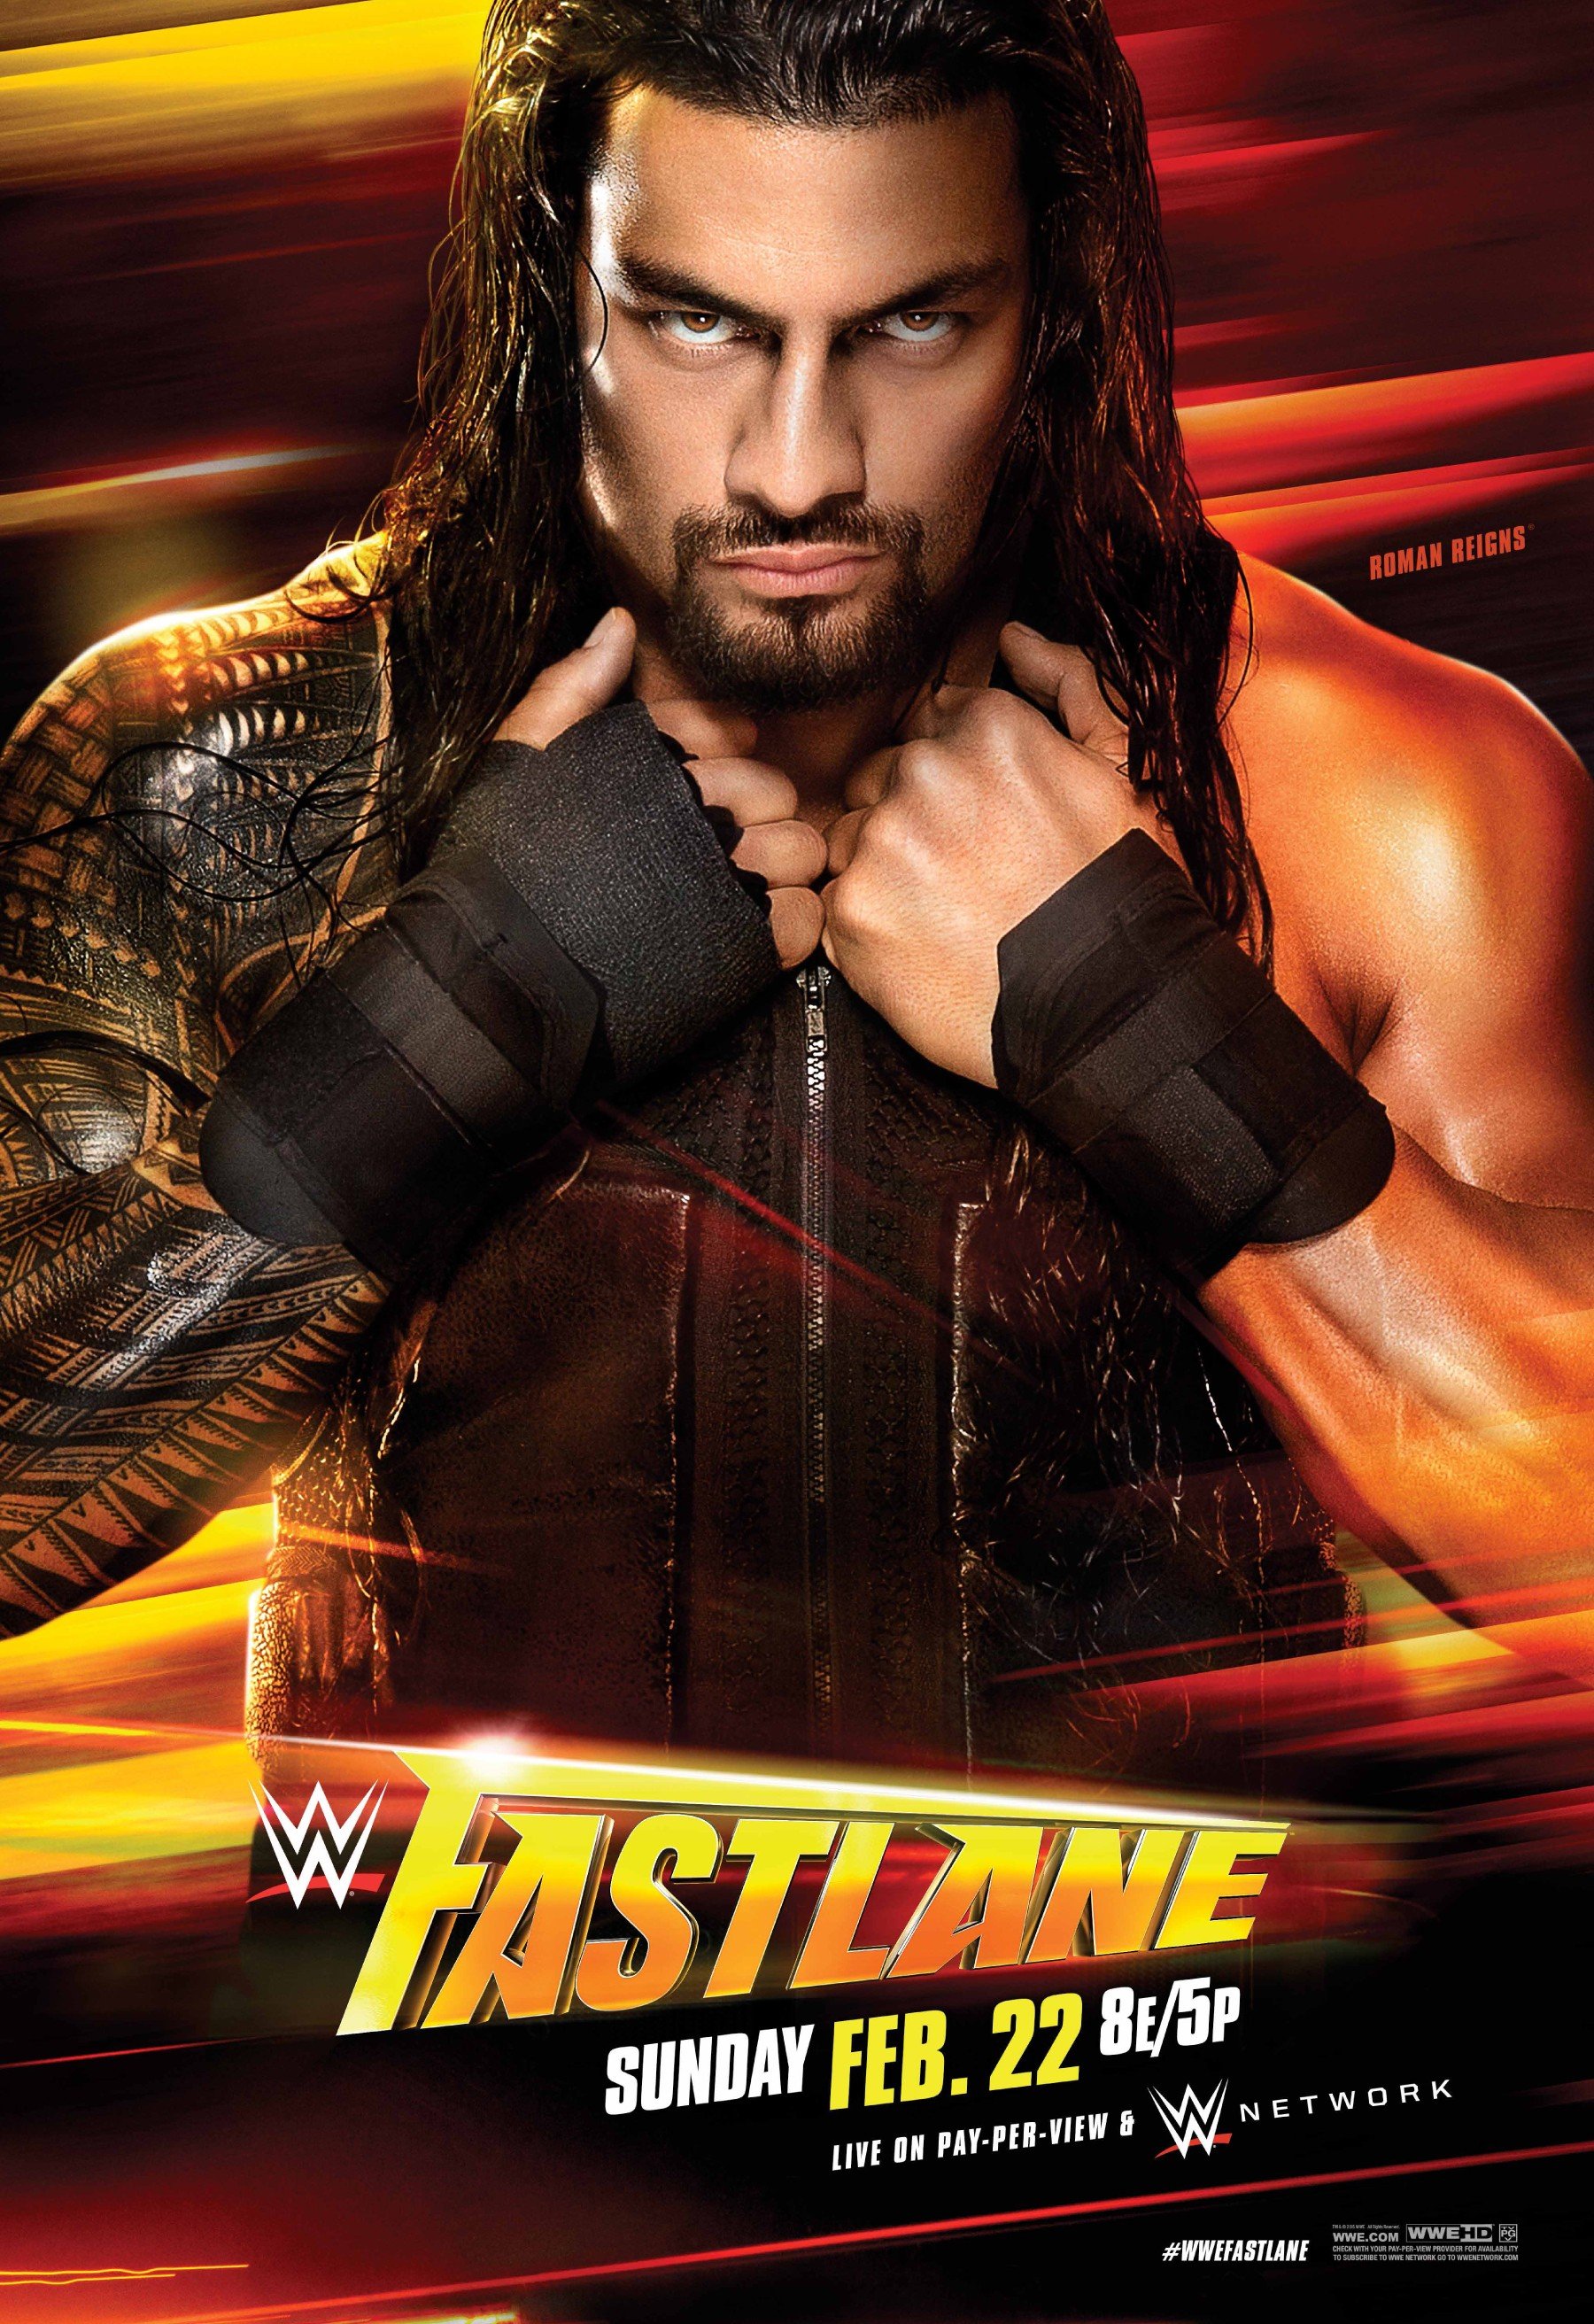 WWE Fastlane 2015 Cobertura y Resultados en vivo   Sting vs Triple